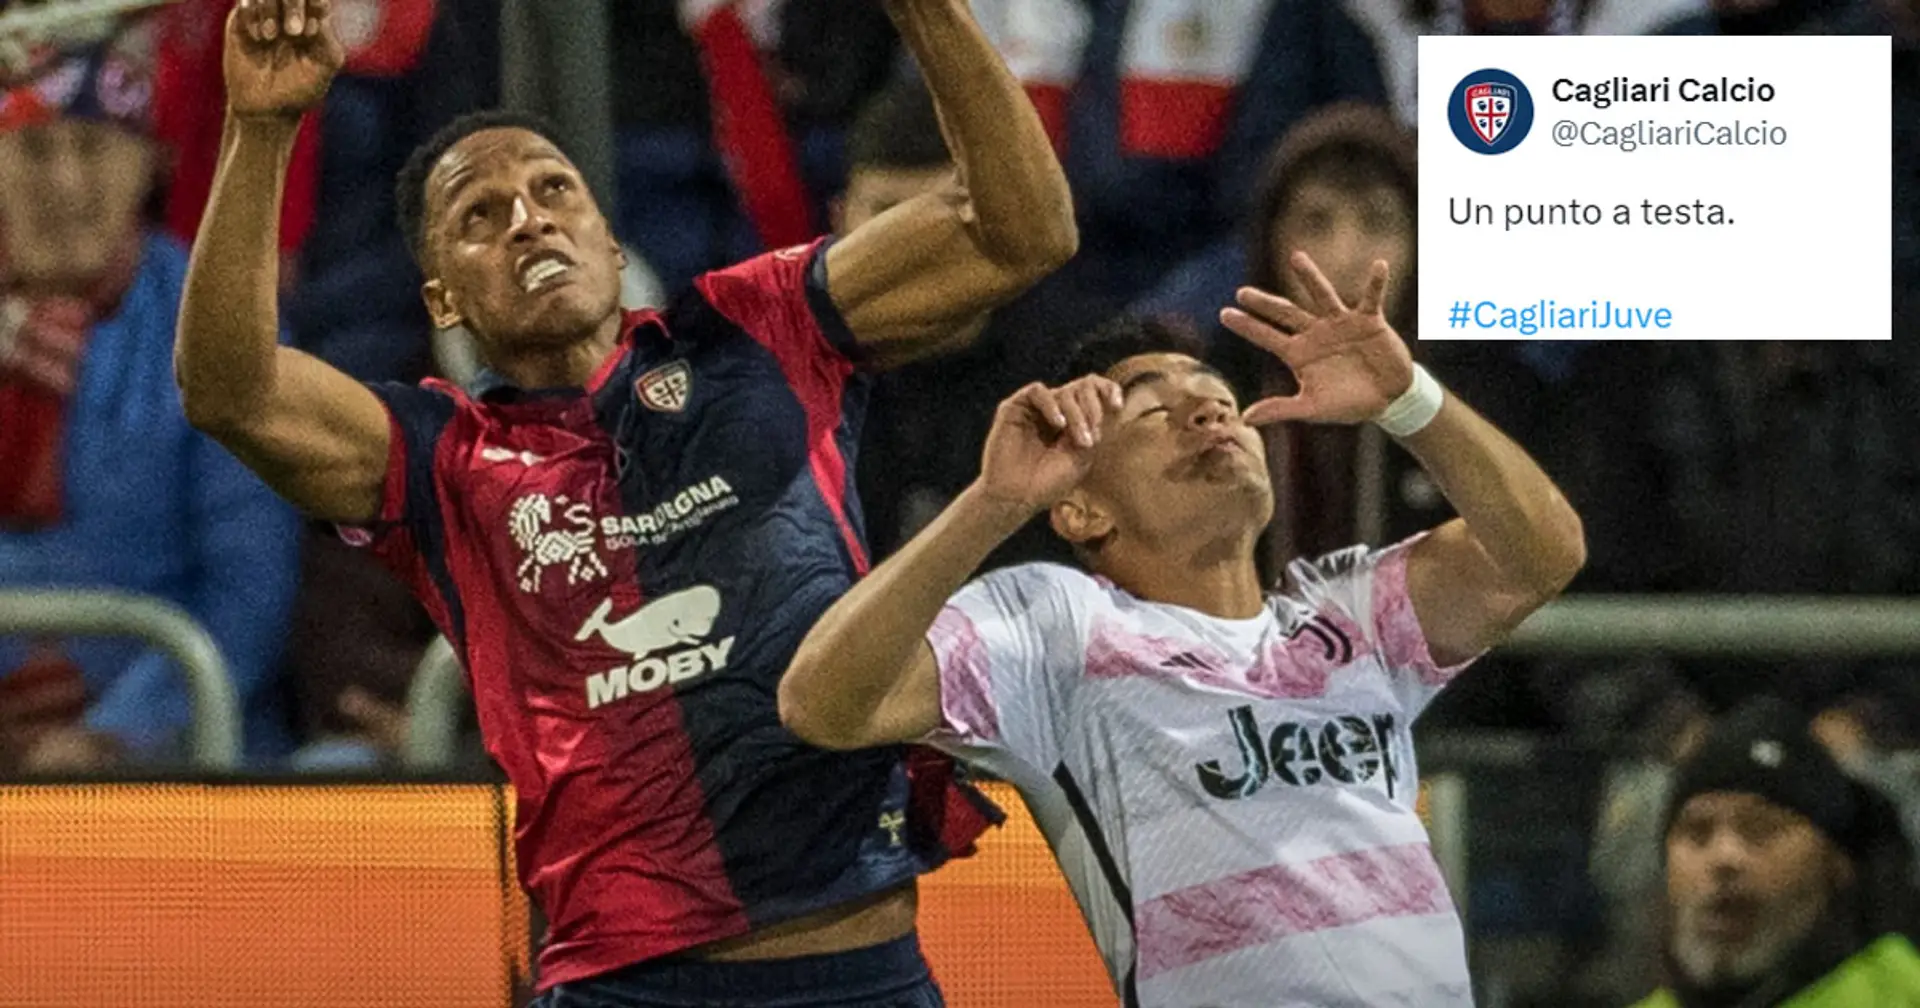 "Un punto a testa": il Cagliari sfotte la Juventus per la gomitata di Mina che è costata 2pt di sutura a Alcaraz